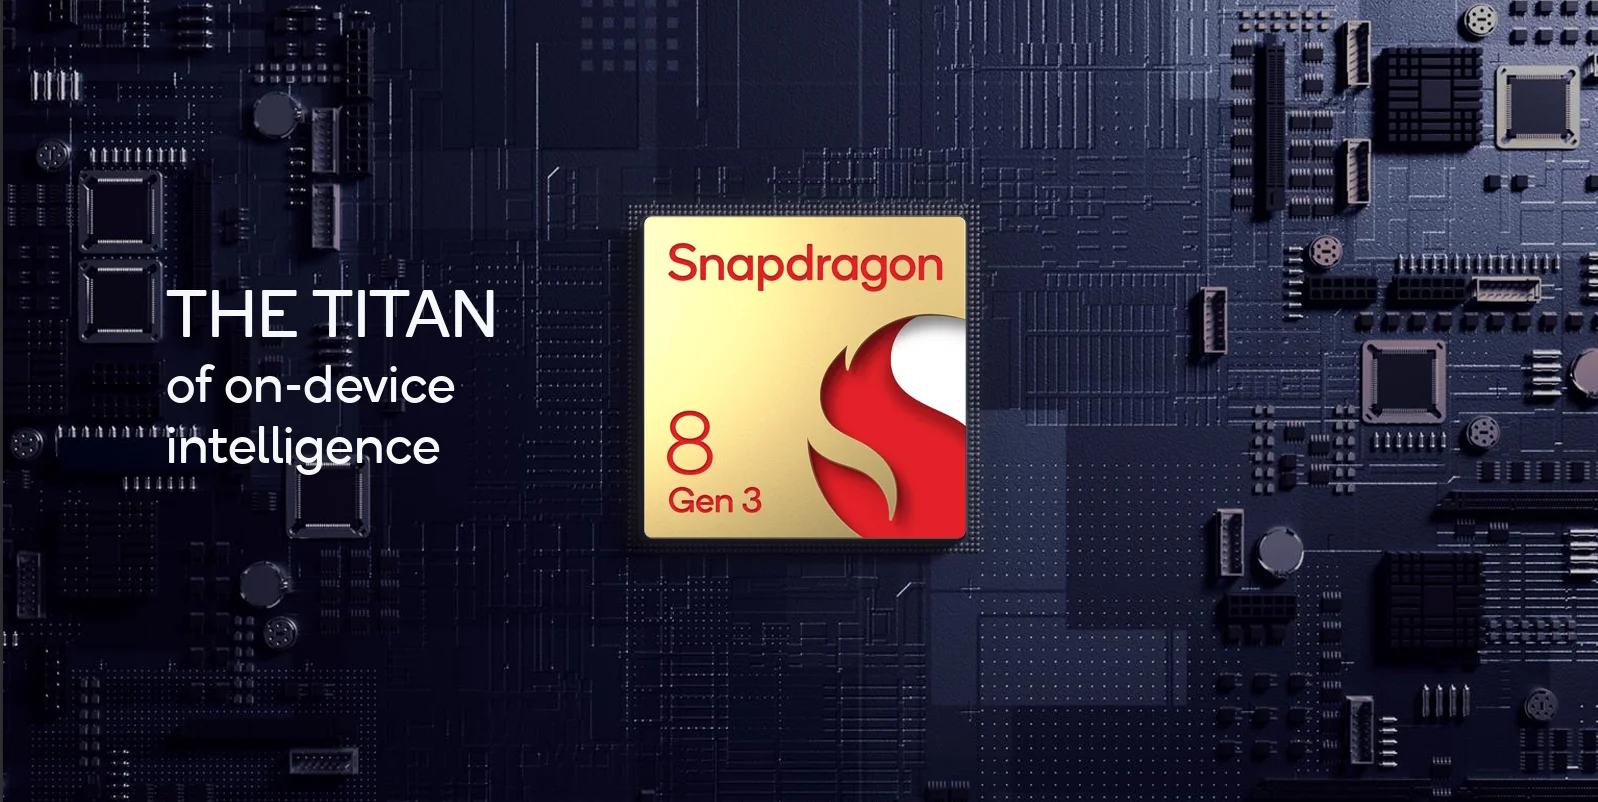 Daftar Smartphone yang Dikonfirmasi Gunakan Snapdragon 8 Gen 3 • Gadget Universe